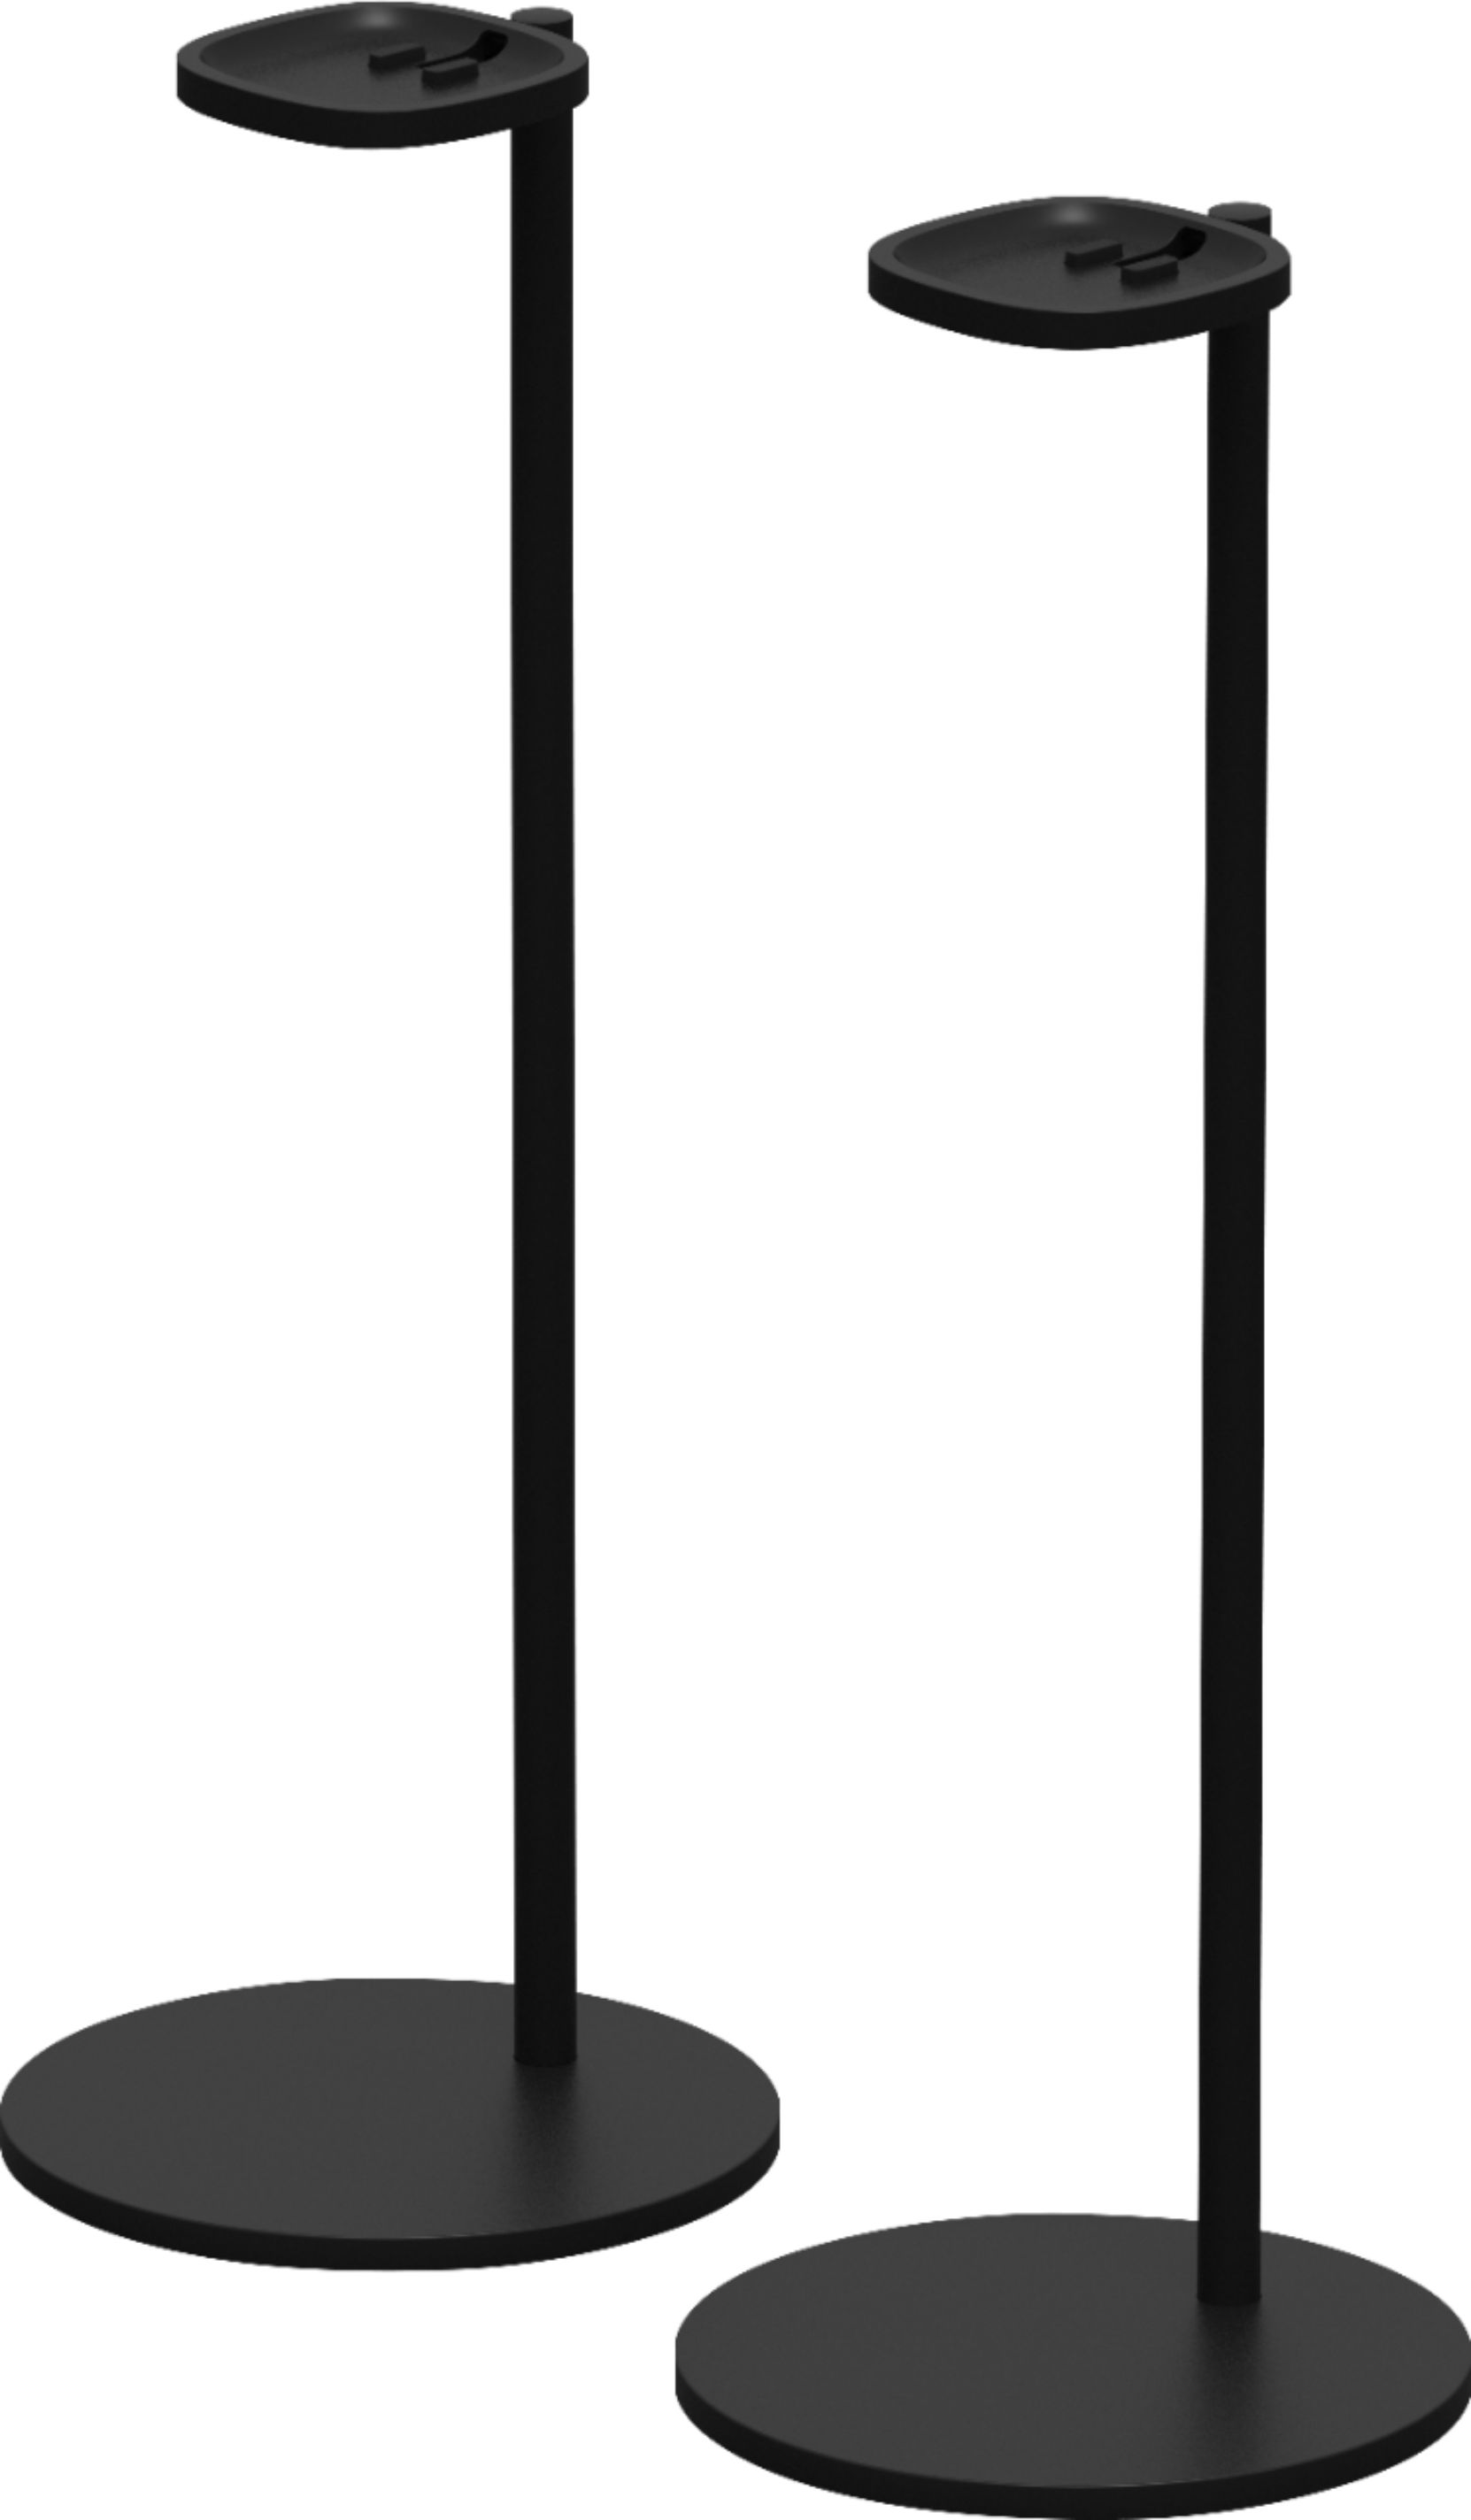 Sonos - Speaker Stands (2-Pack) - Black